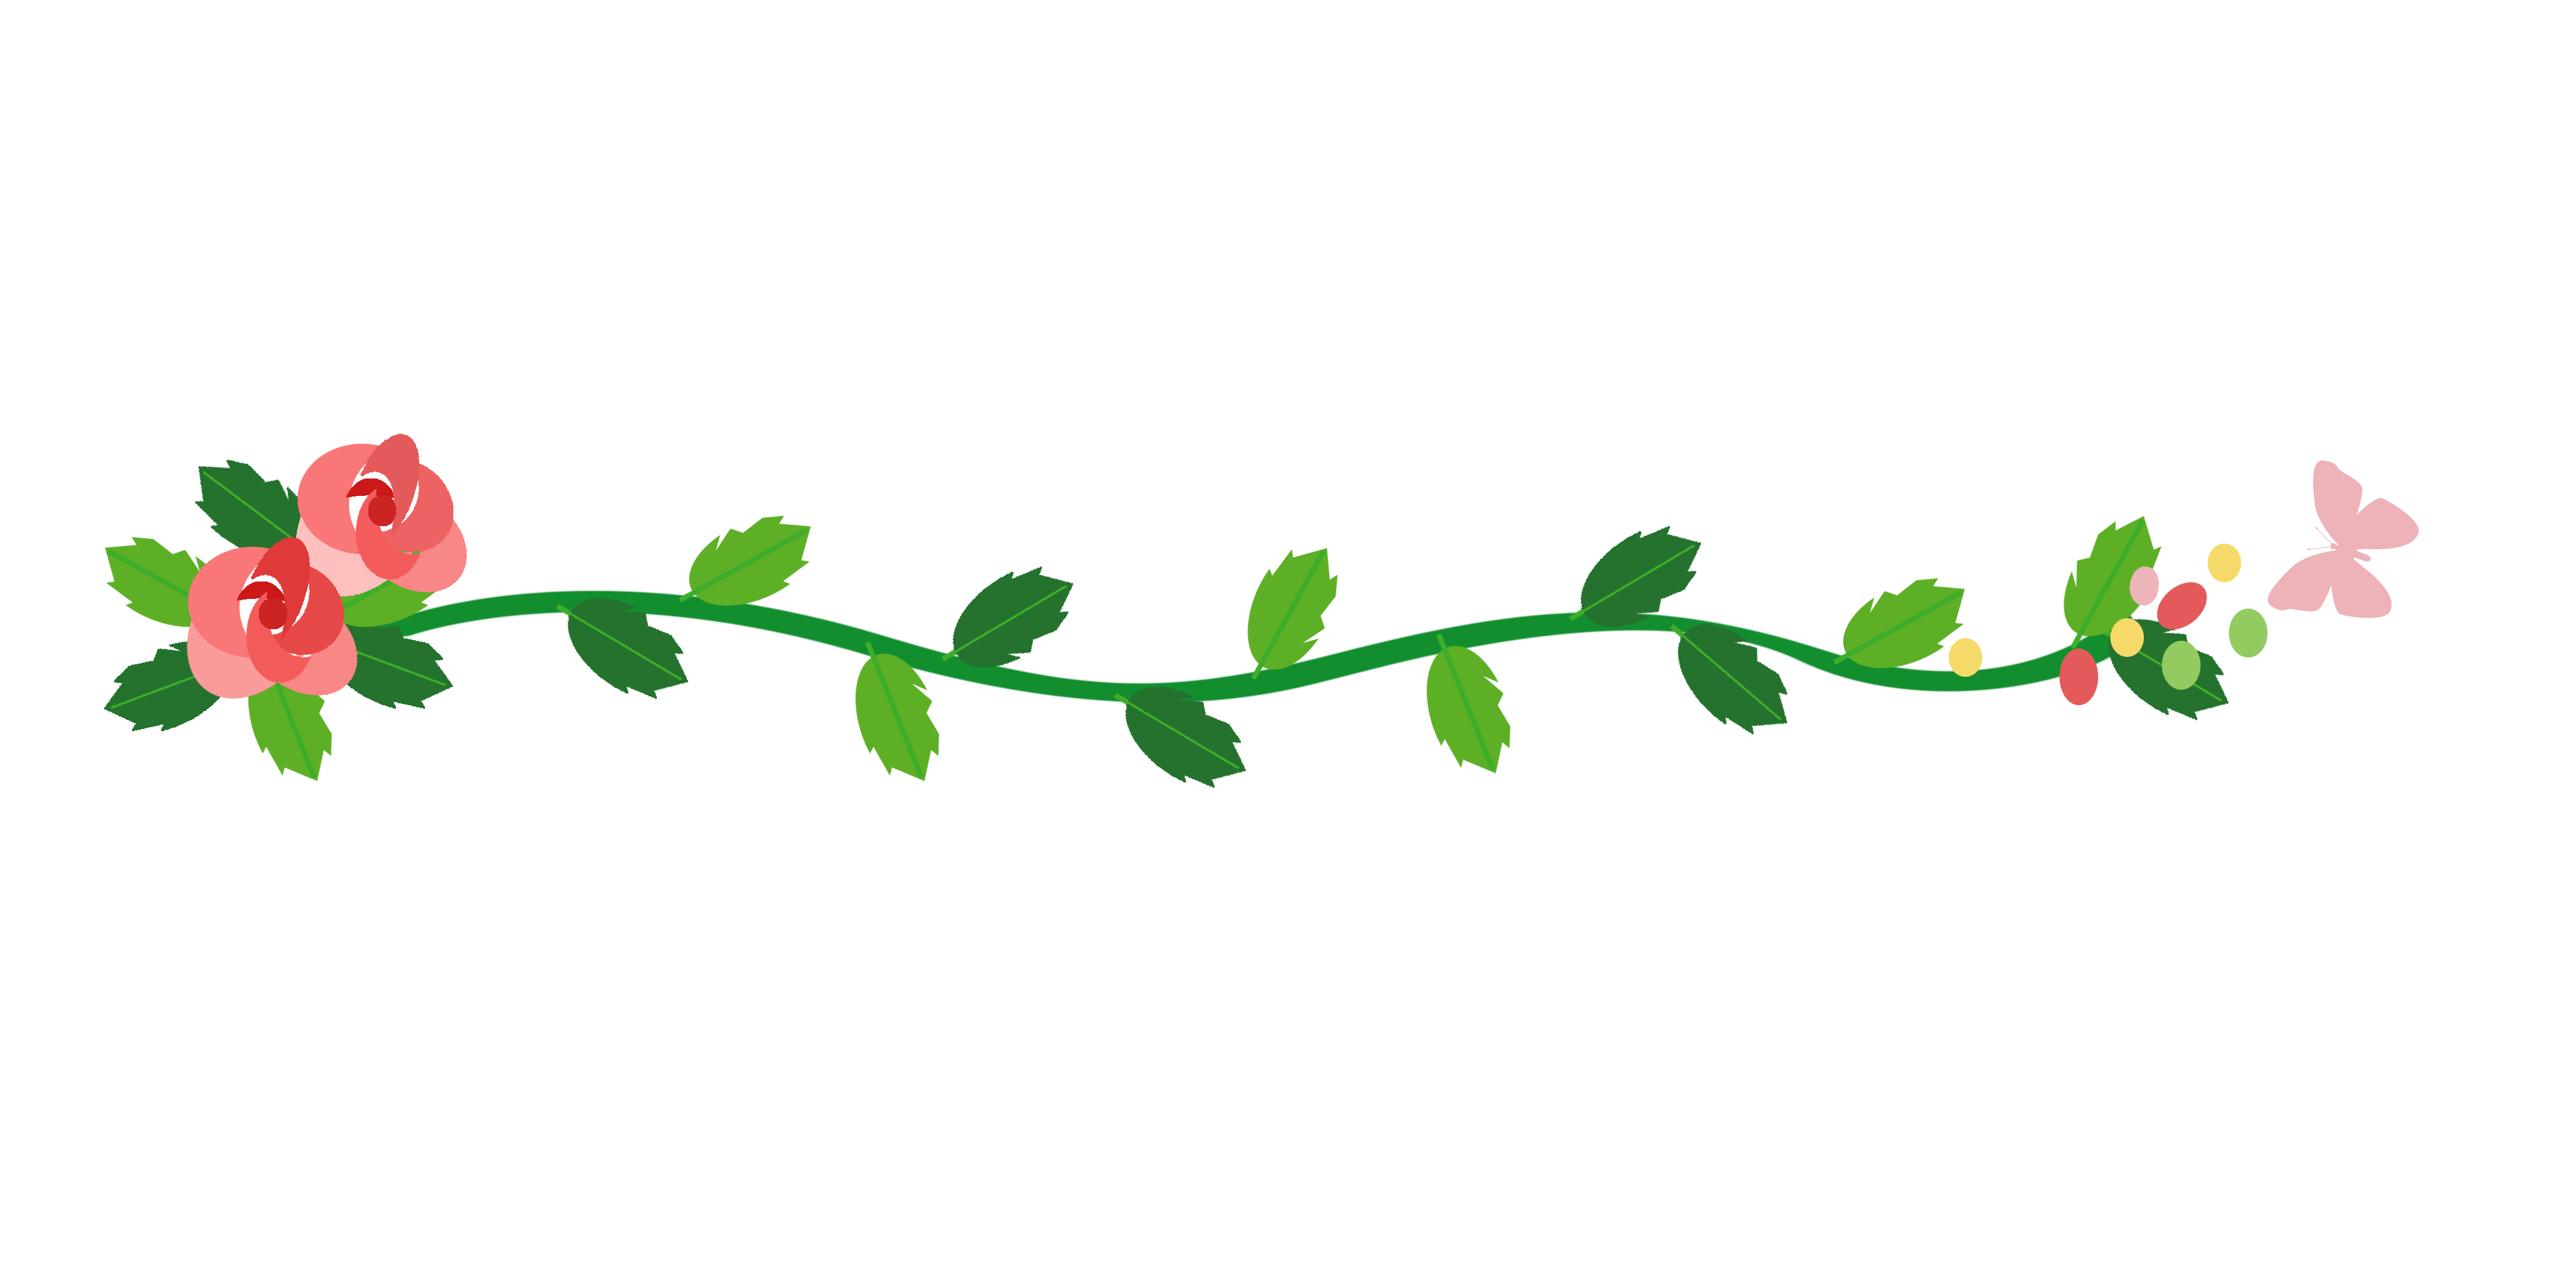 —Pngtree—rose green leaf dividing line_4609892.png